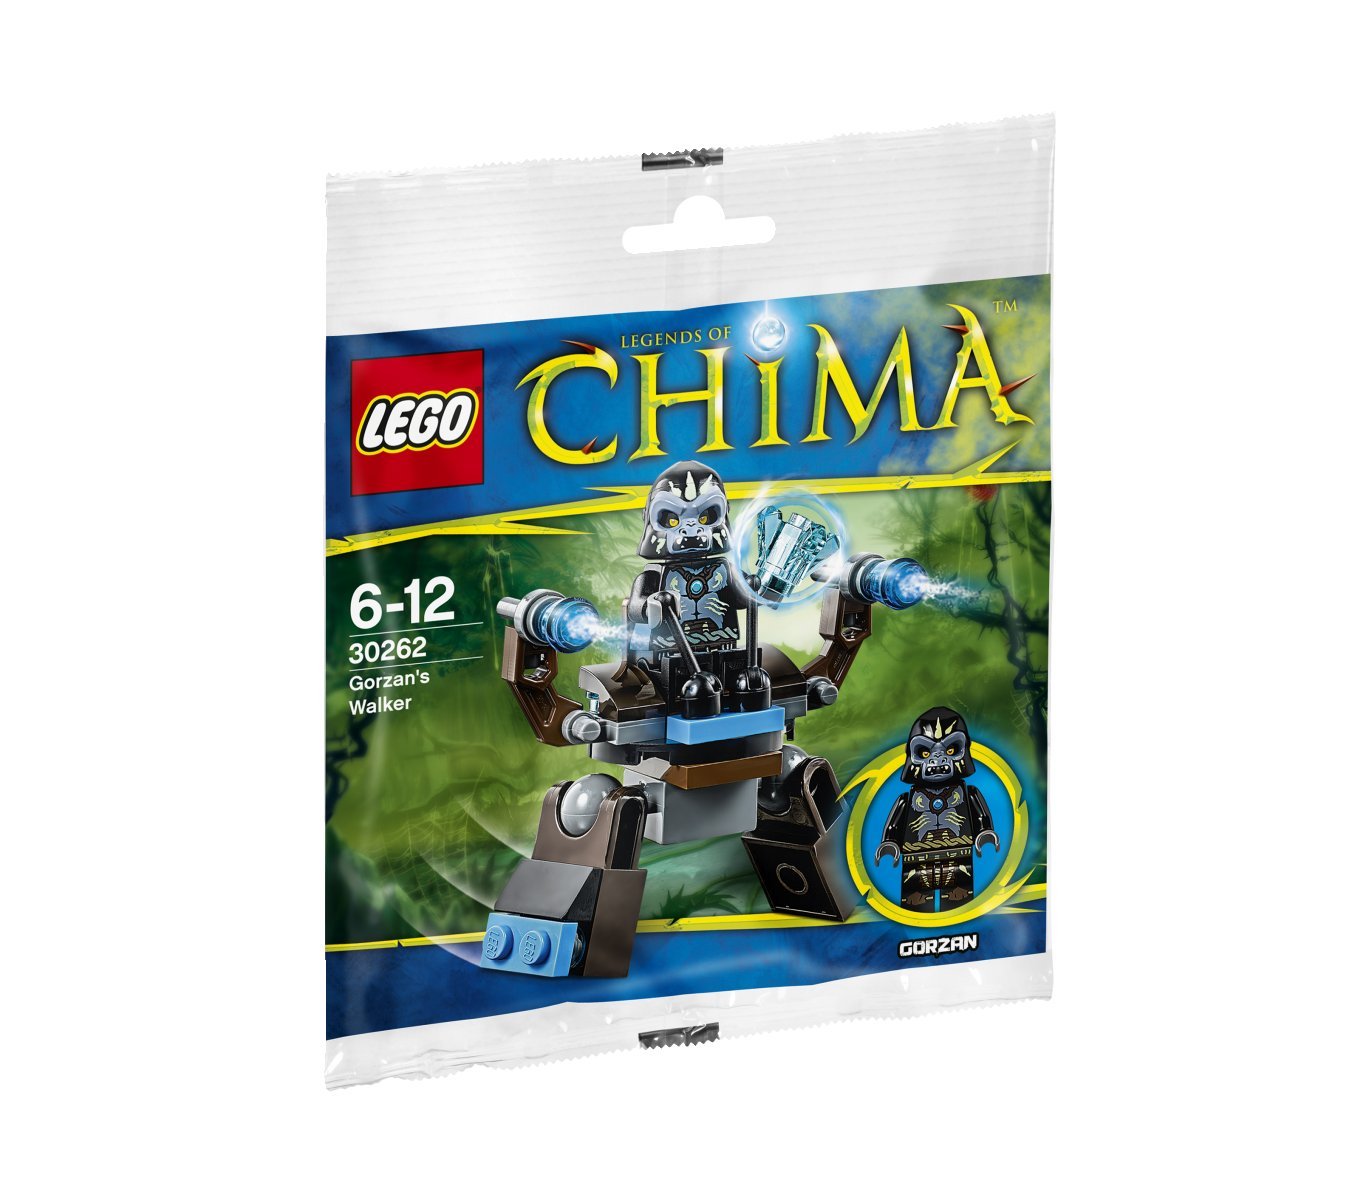 LEGO Legends of Chima Gorzan's Walker (30262) Bagged Set